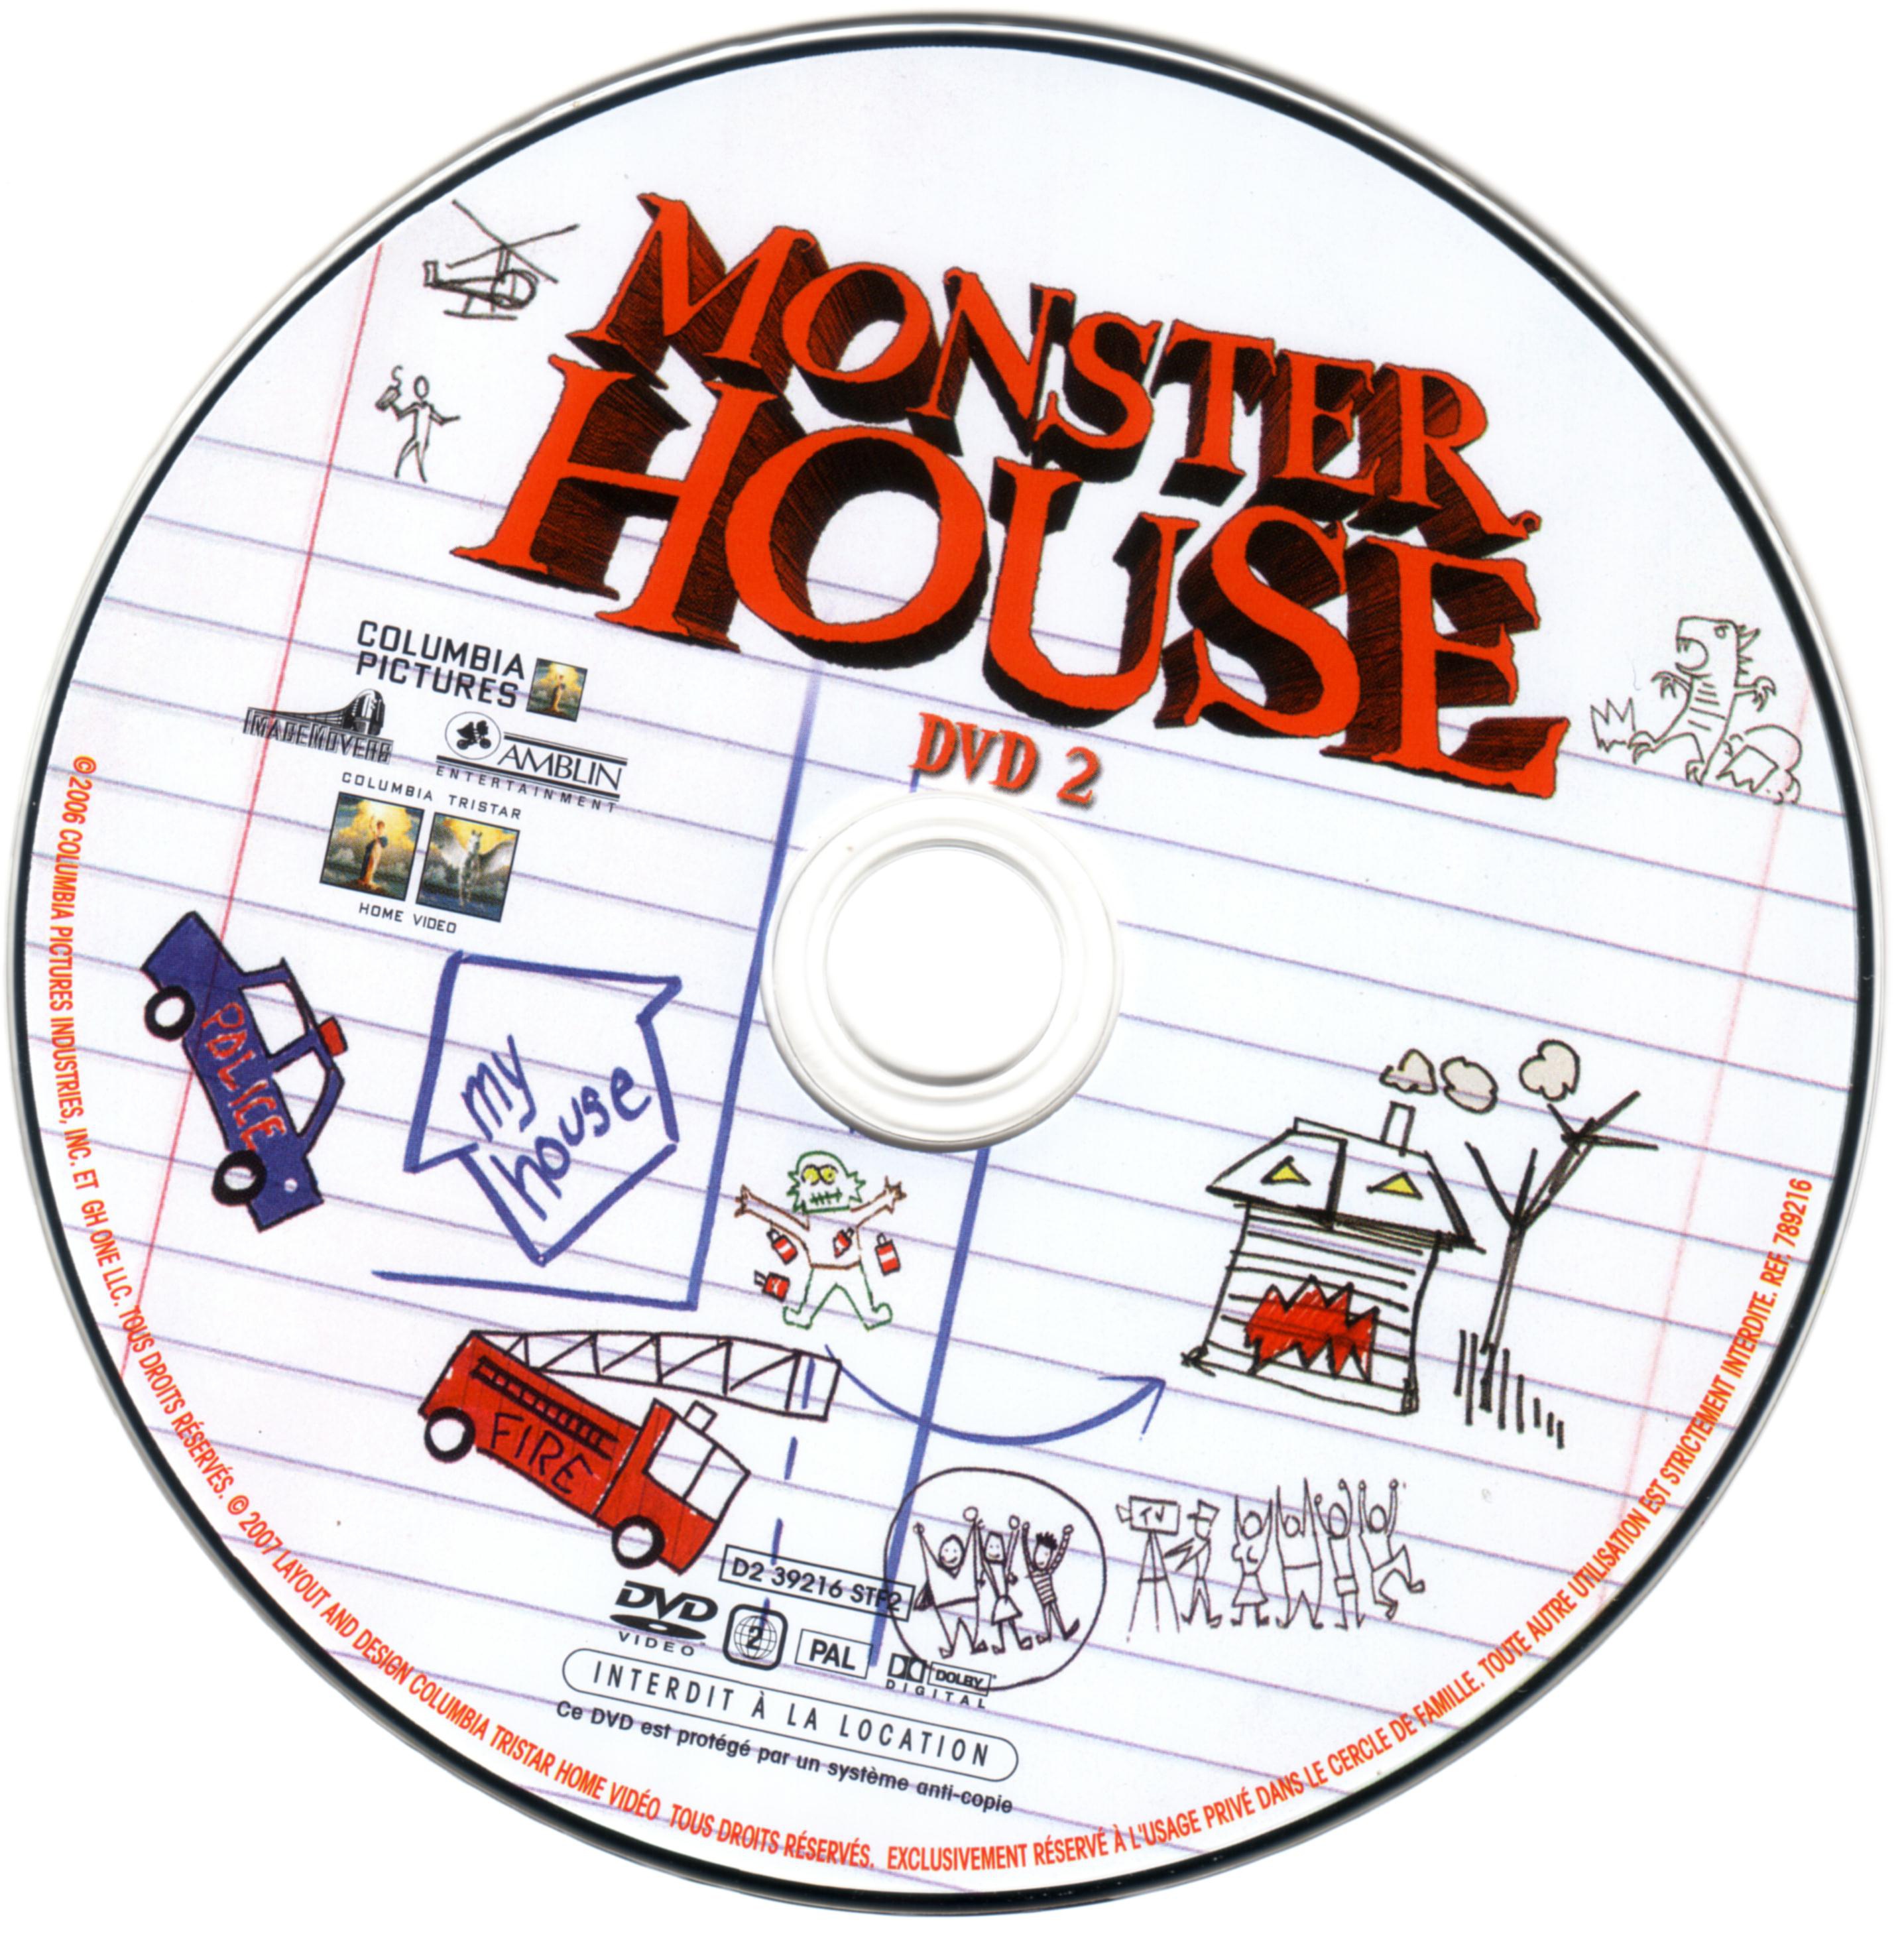 Monster house DISC 2